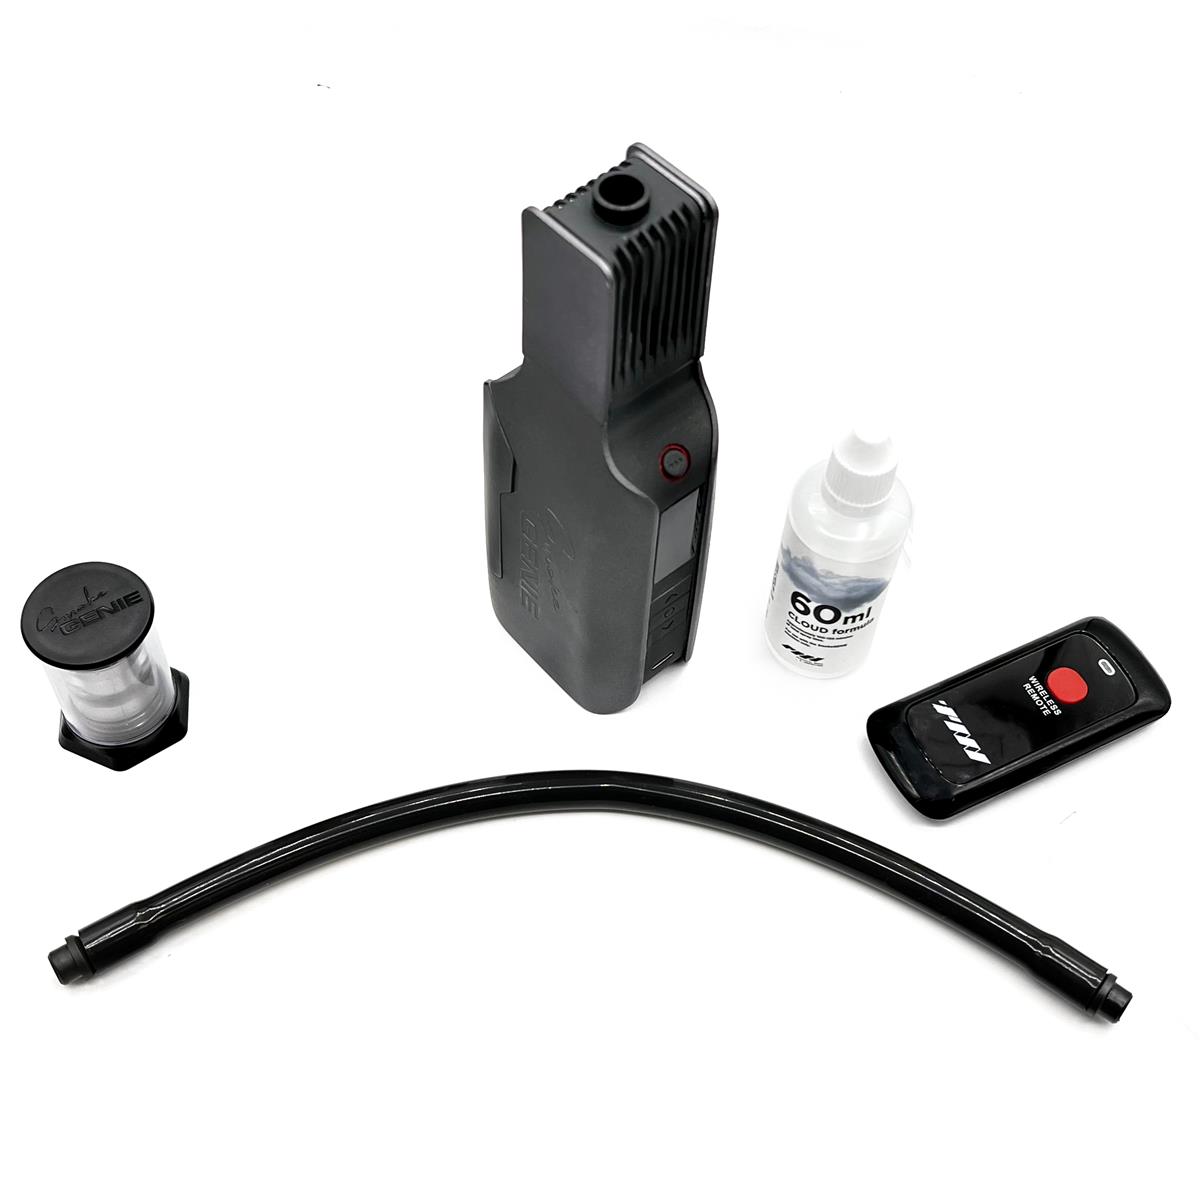 Image of Spekular SmokeGENIE Starter Kit with Handheld Smoke Machine and Wireless Remote